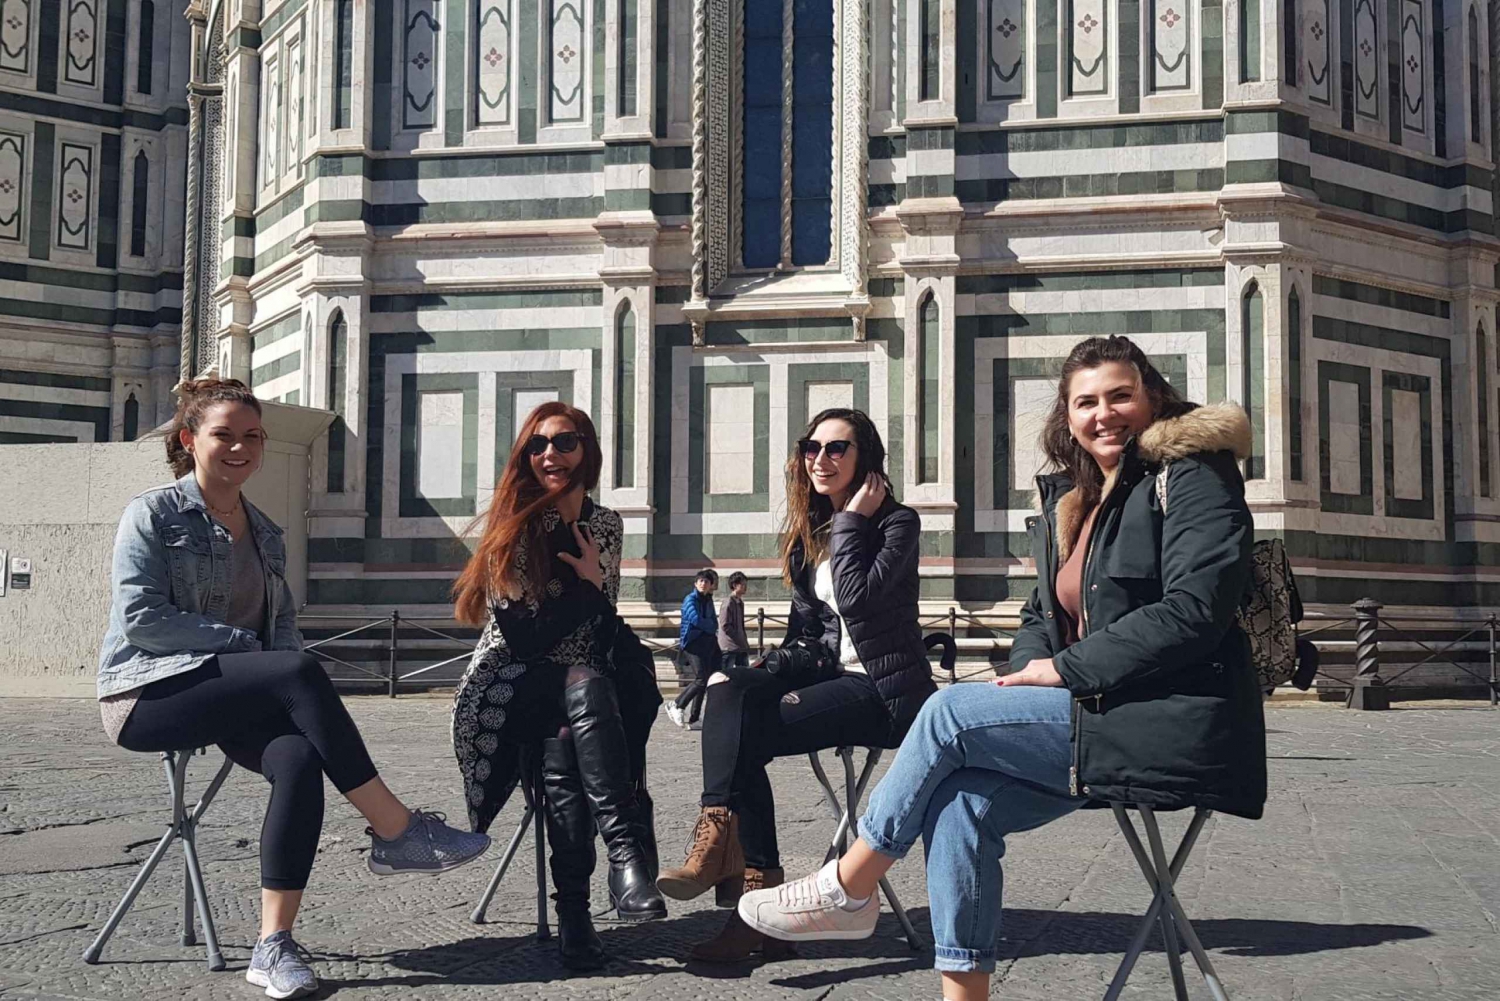 Firenze: Særlig vandretur med gelato